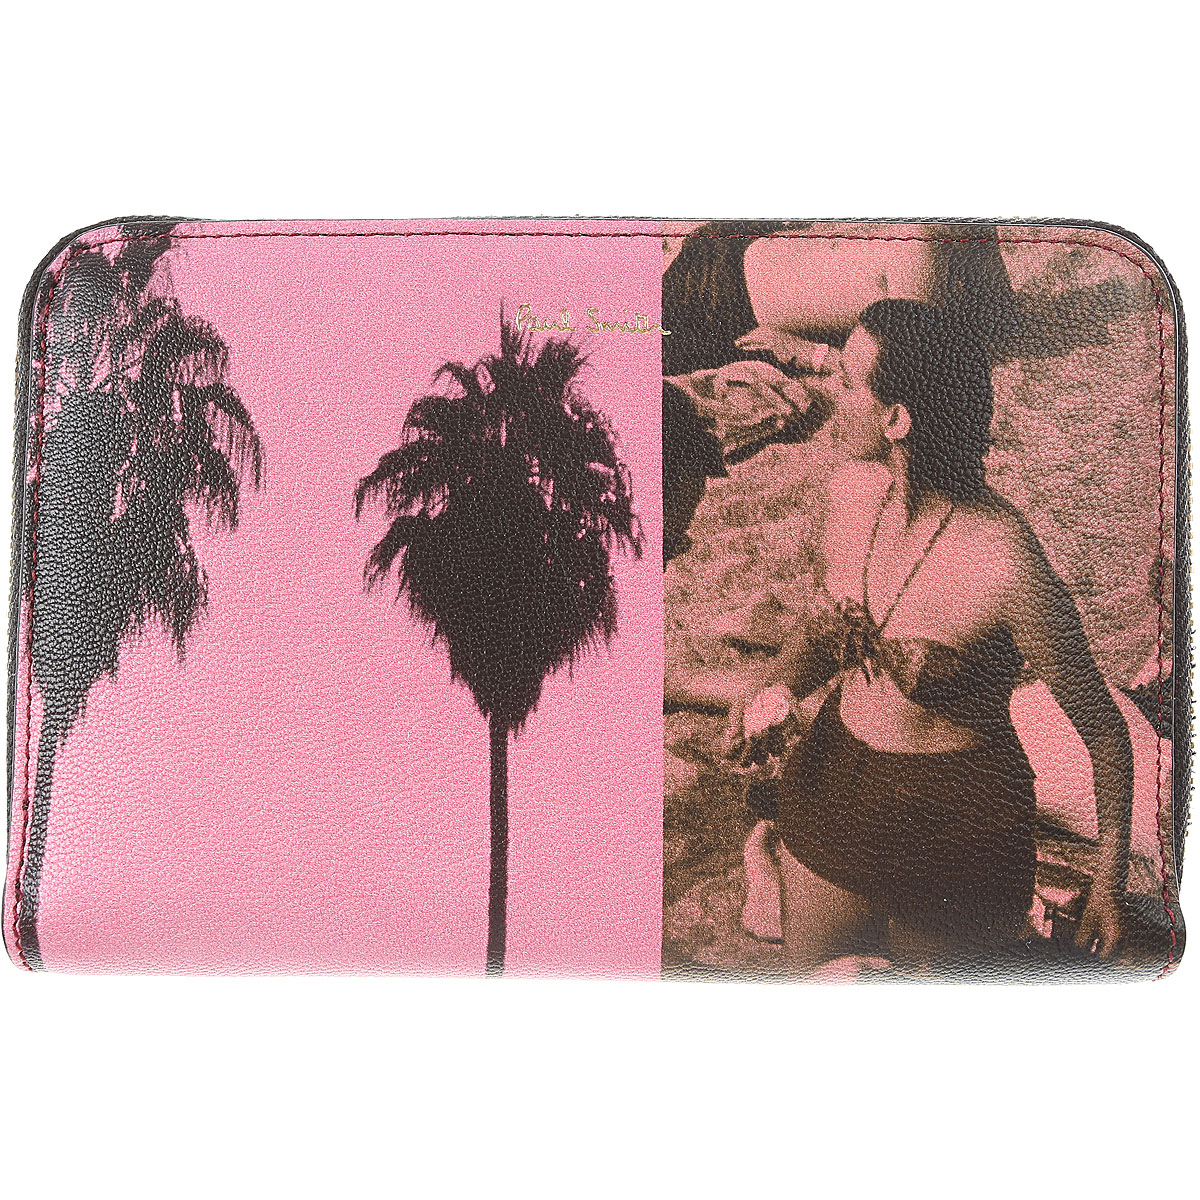 Paul Smith Brieftasche für Damen, Portemonnaie, Geldbörsen, Geldbeutel Günstig im Sale, Pink, Leder, 2017